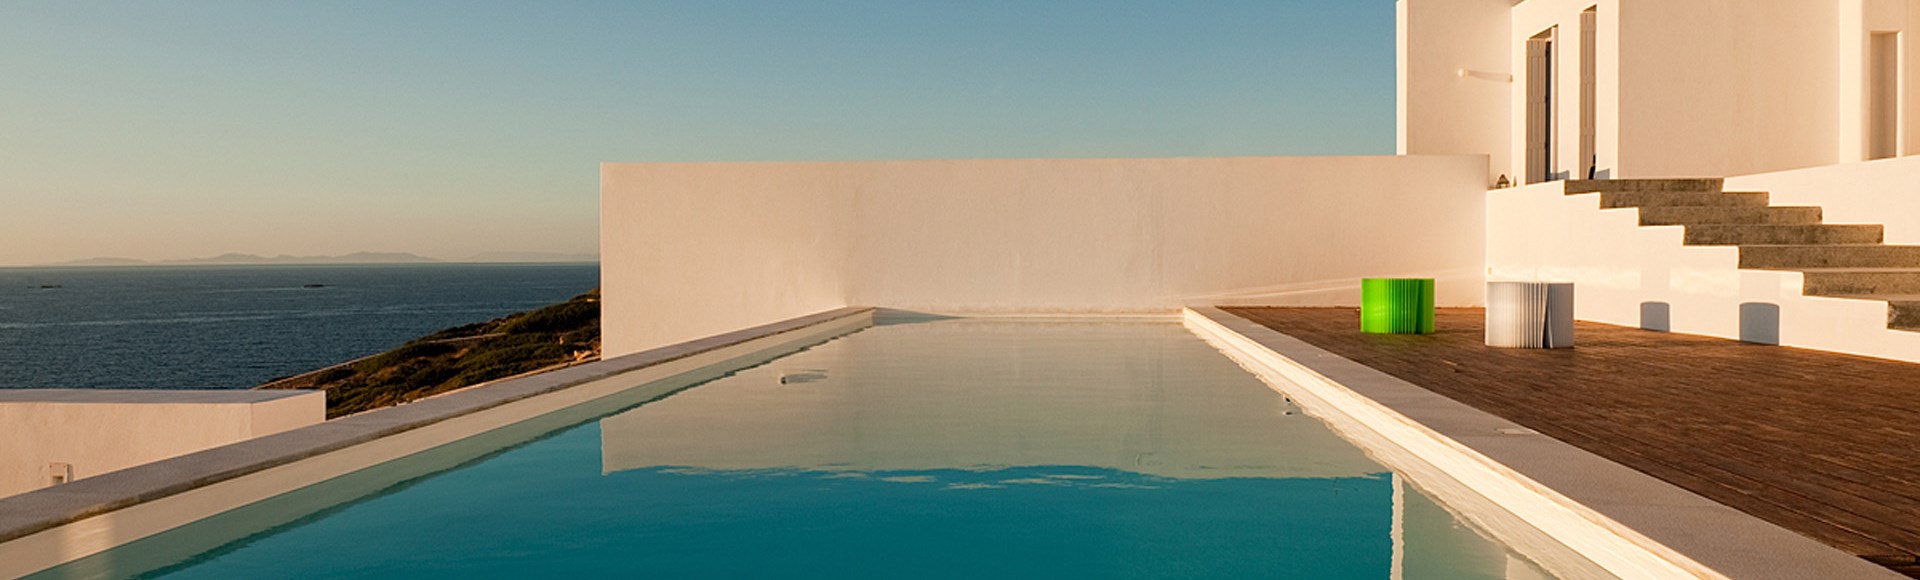 Villas with Pools in Crete, Corfu & Paros | Handpicked by Alargo